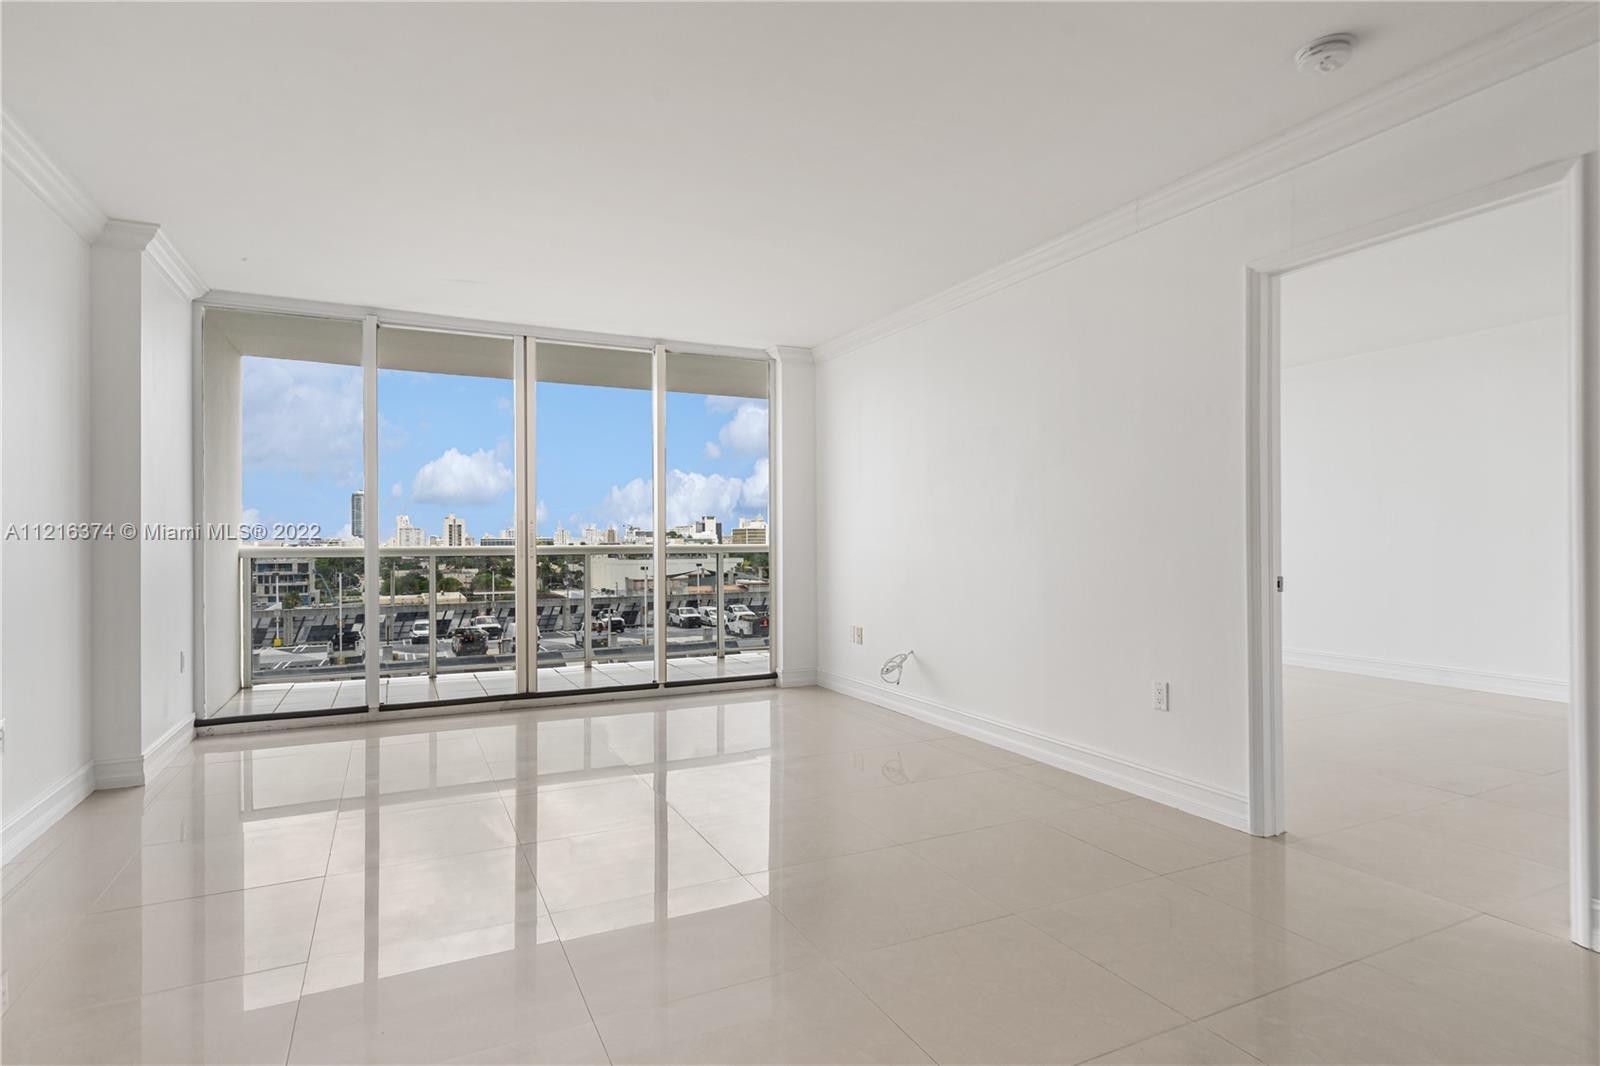 4. Condominiums at 1800 Sunset Harbour Dr , 911 Miami Beach